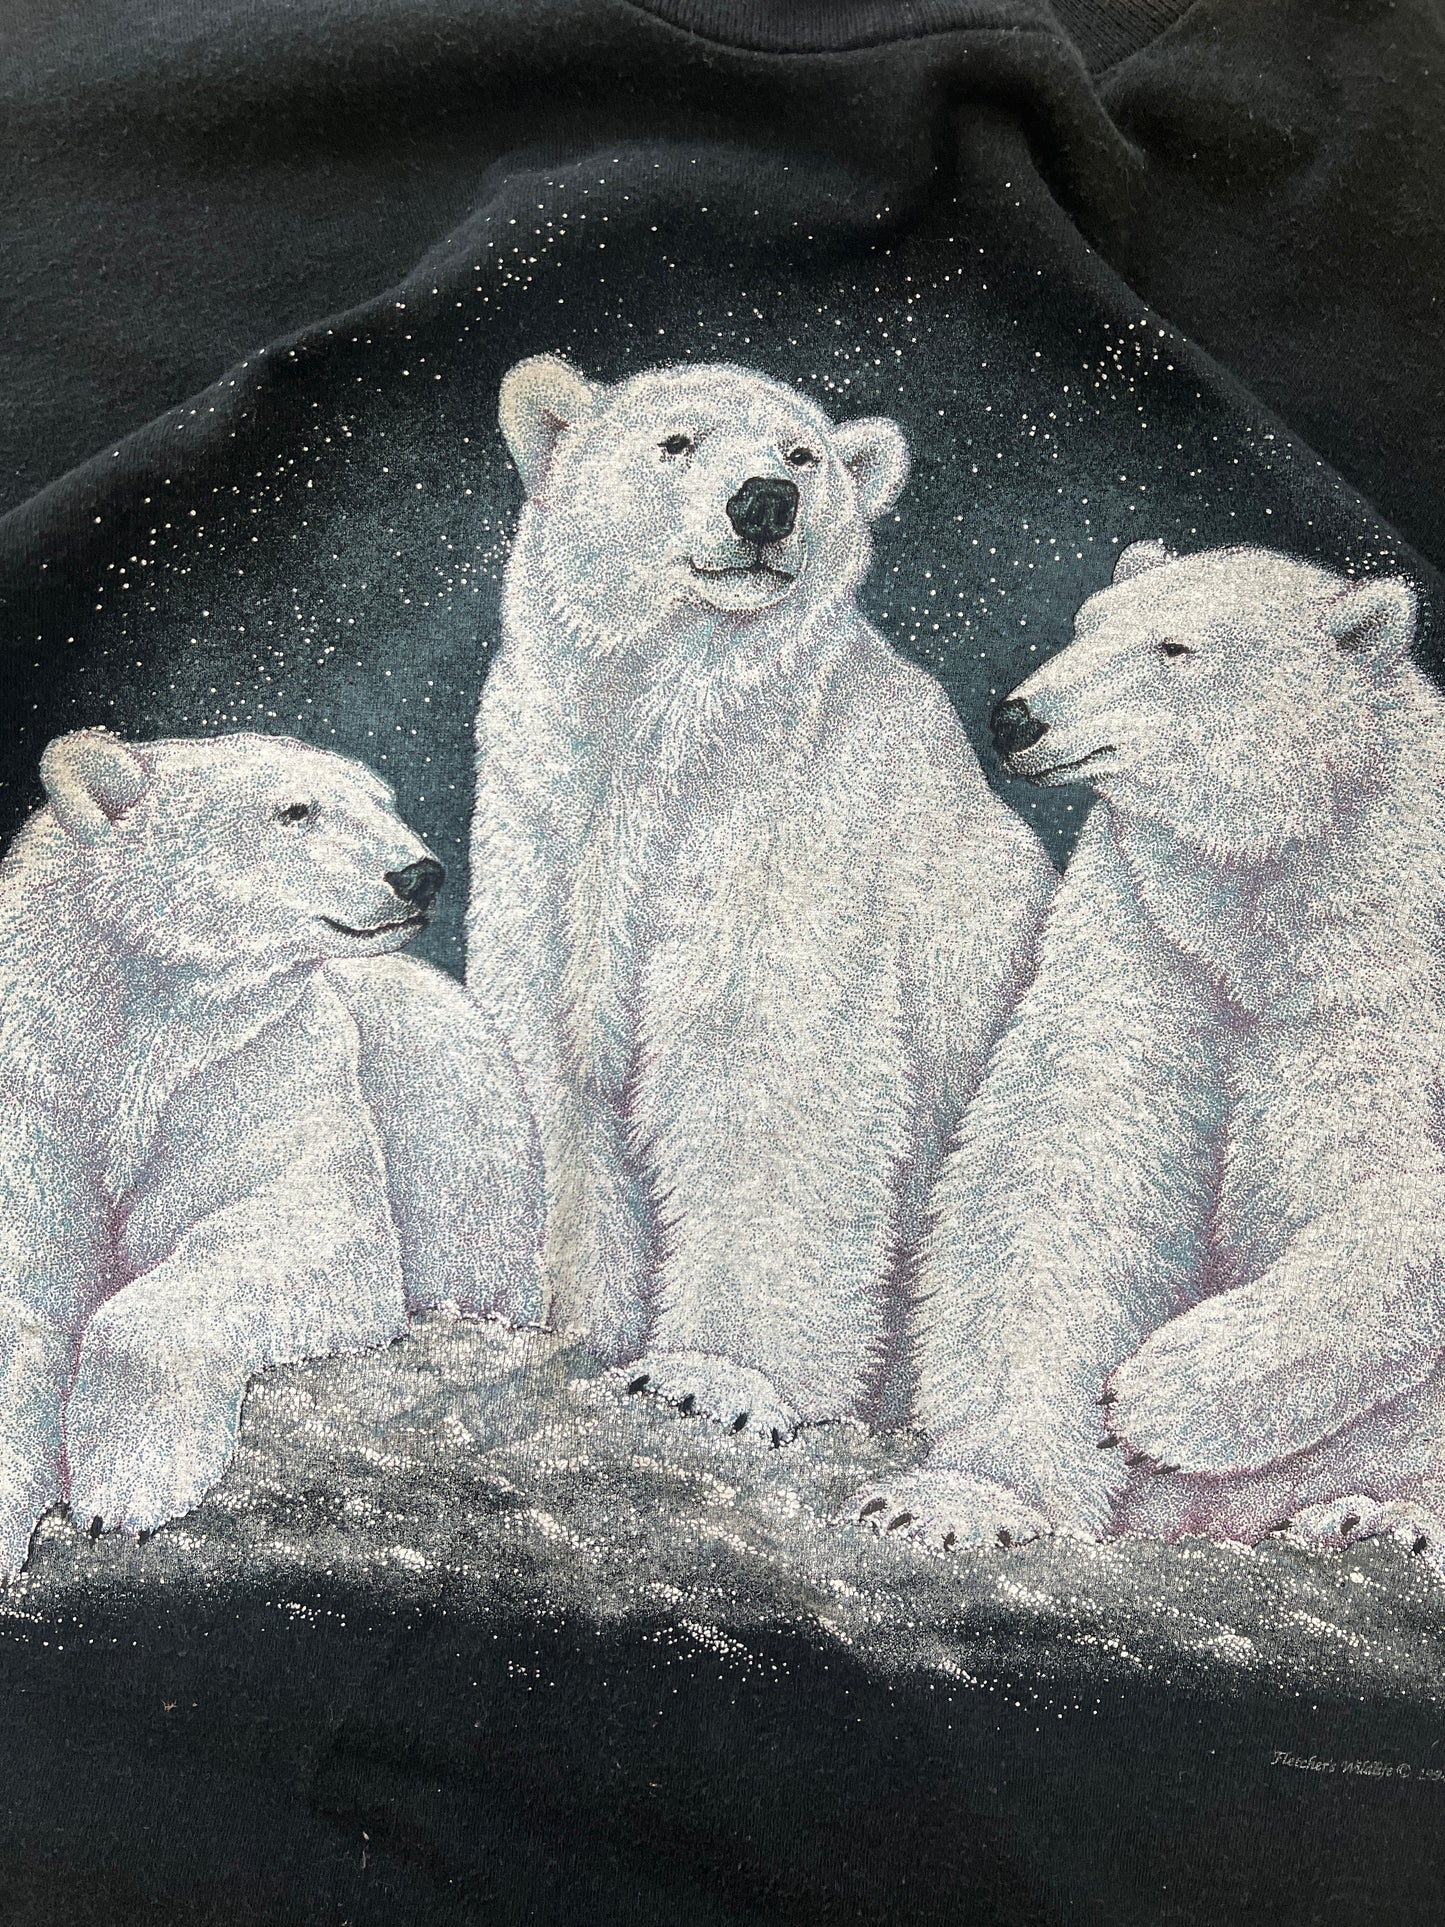 Vintage Polar Bears Shirt - XL